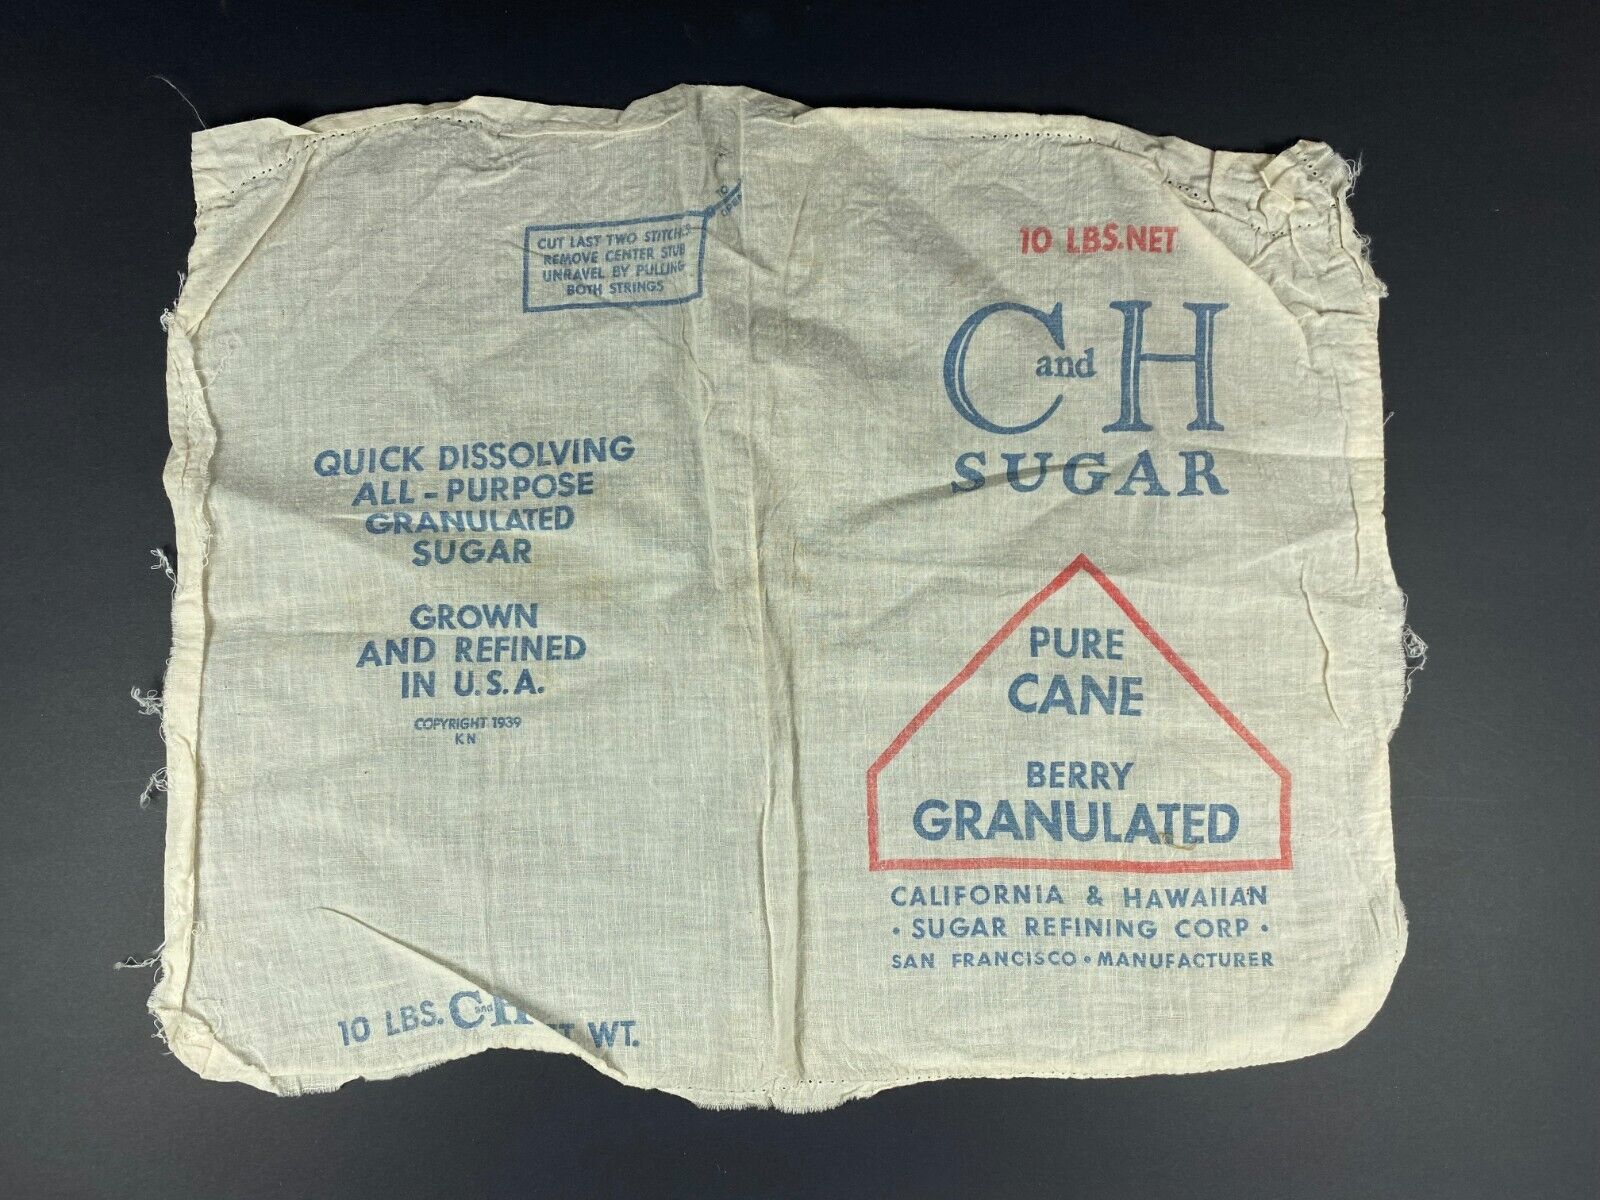 1939 10lb C & H Sugar Sack - California & Hawaiian Sugar Refining Corp. - SF, CA